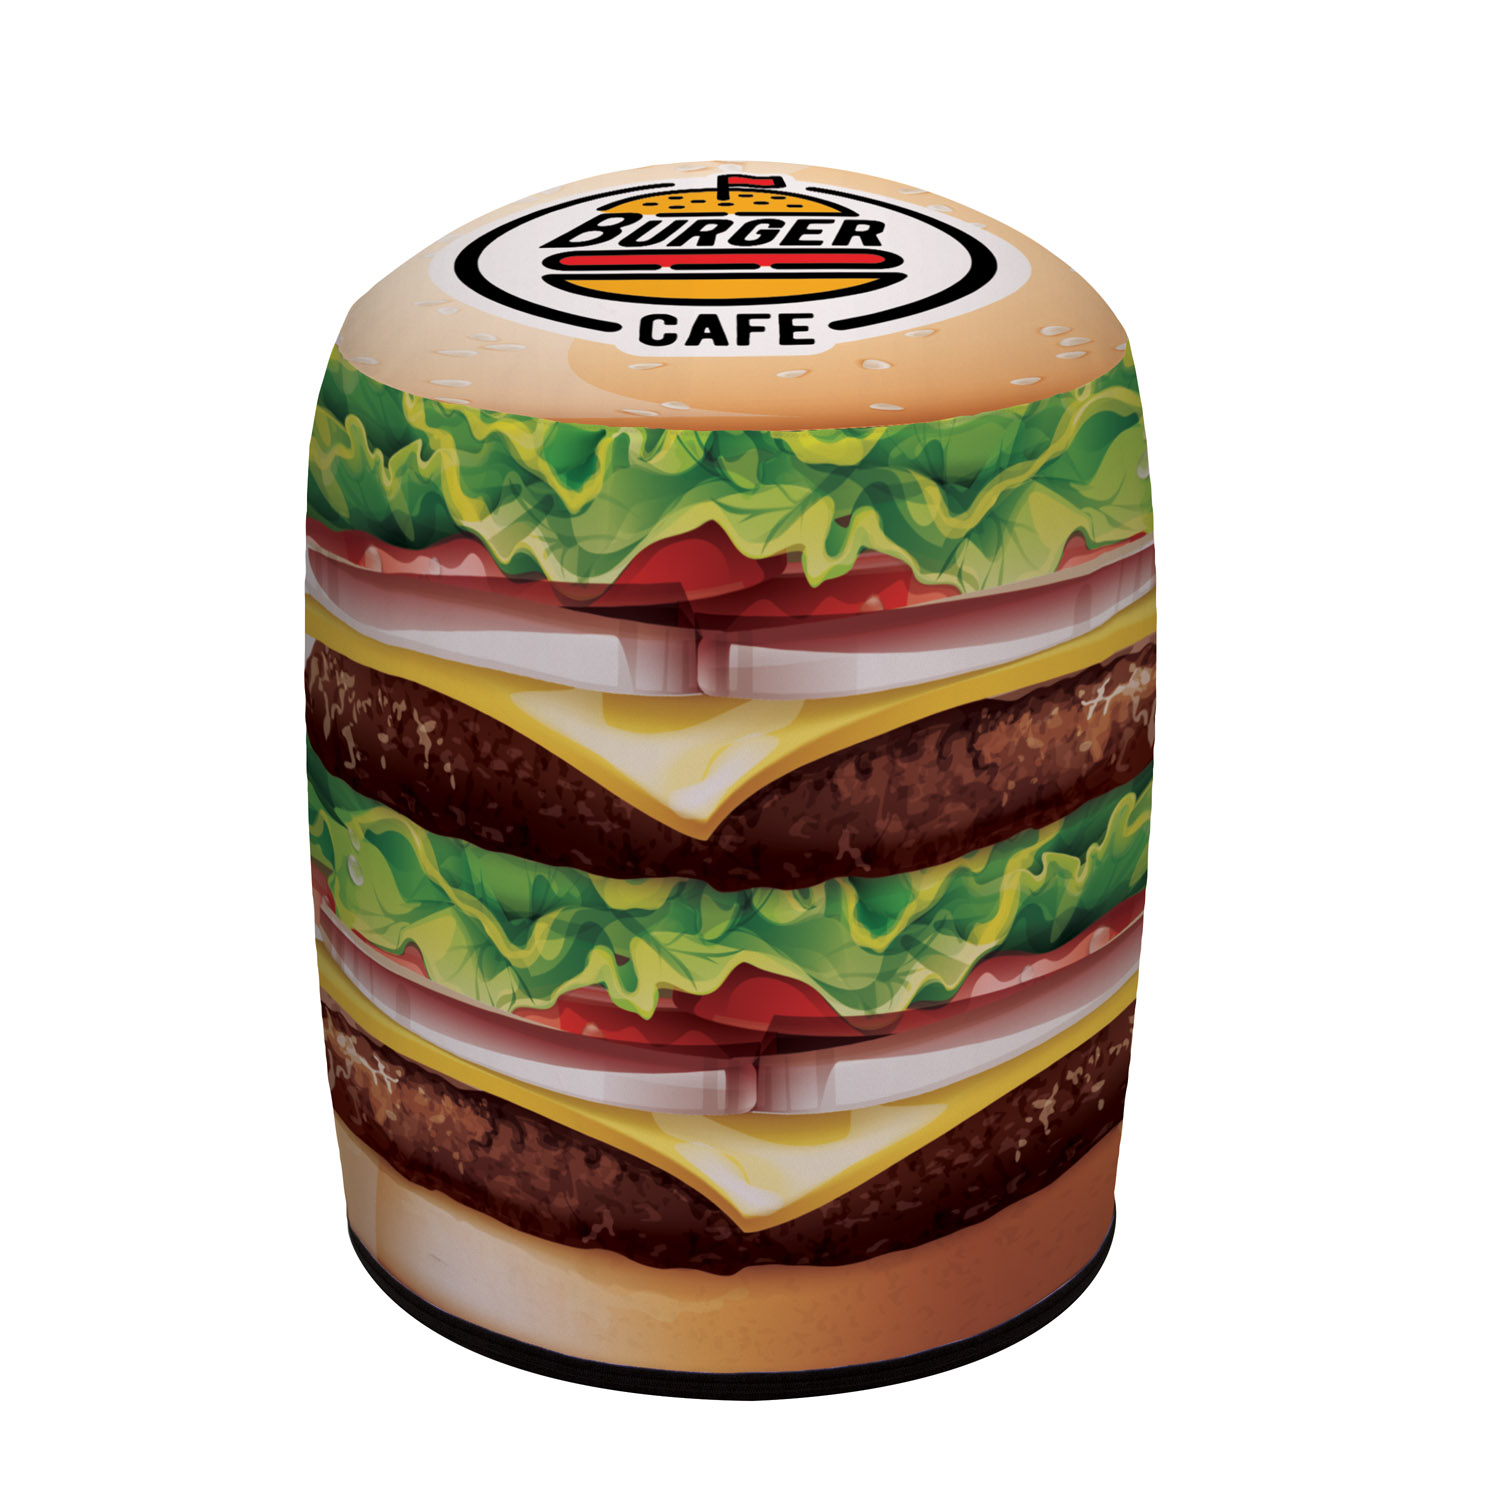 blow up burger with burger cafe logo on the bun